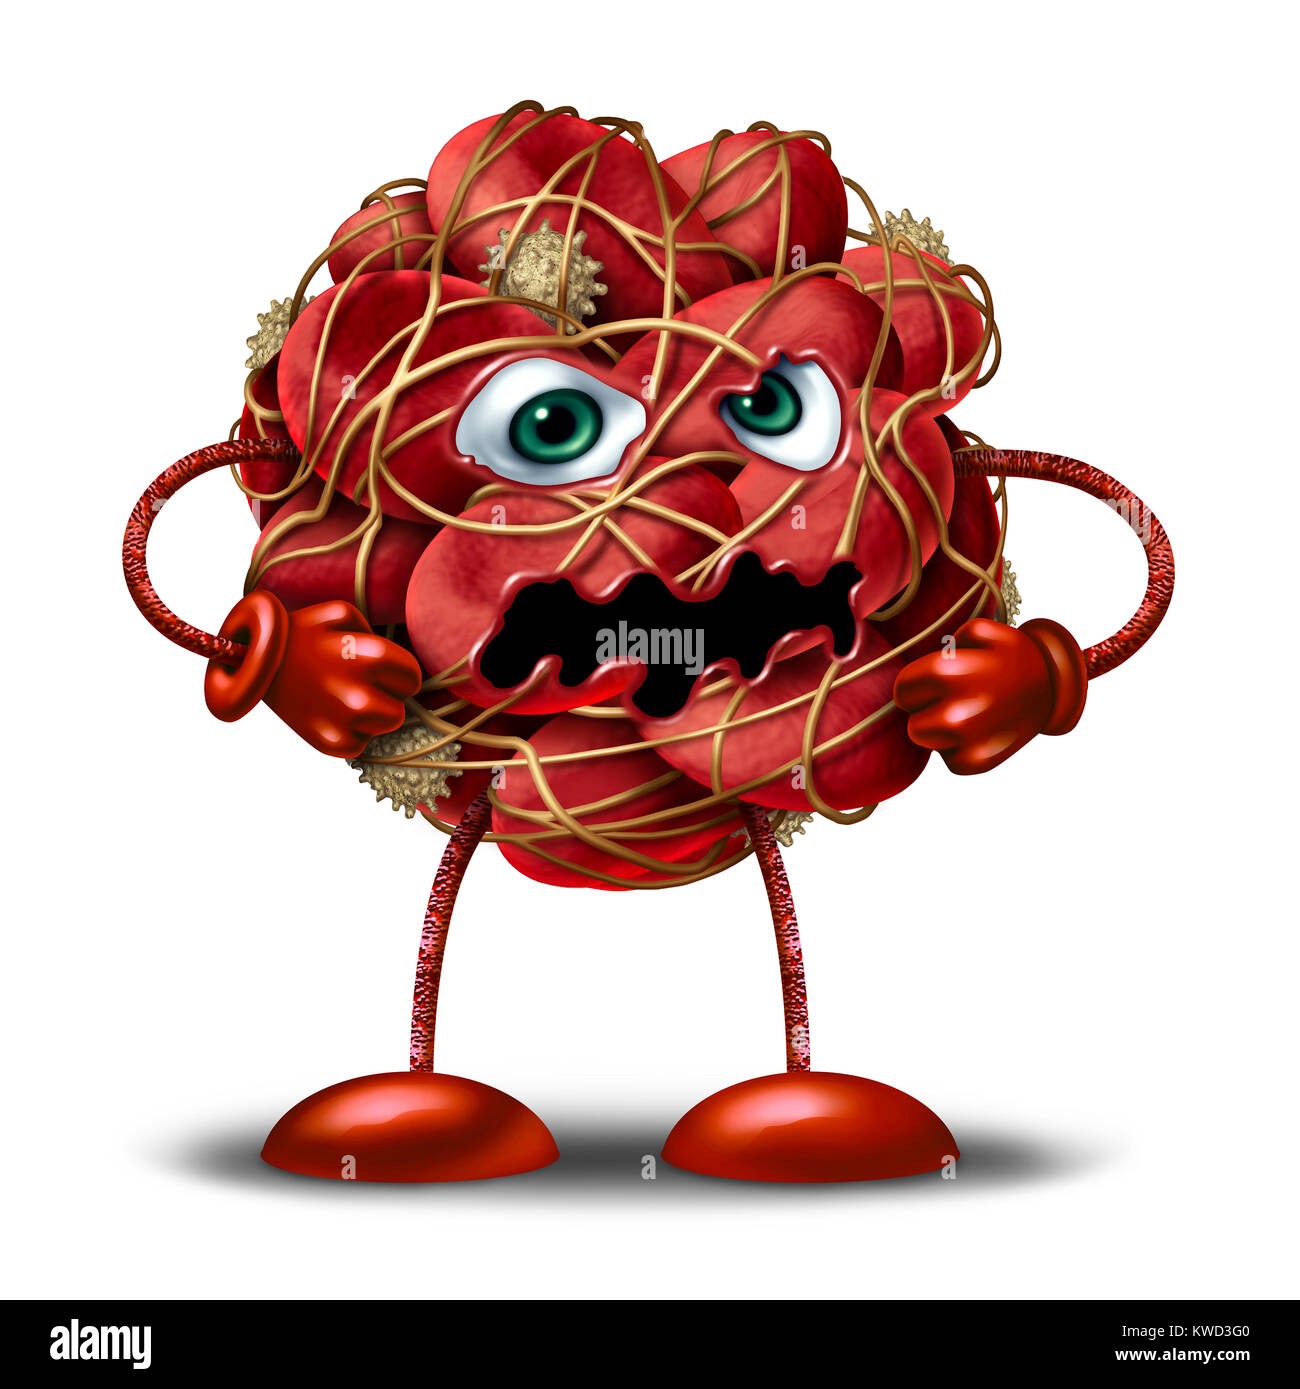 Caillot de sang ou de caractères comme mascotte d'un groupe de globules rouges humains regroupé, arrêt ou ralentissement du débit de circulation comme une illustration 3D sur un fond blanc. Banque D'Images